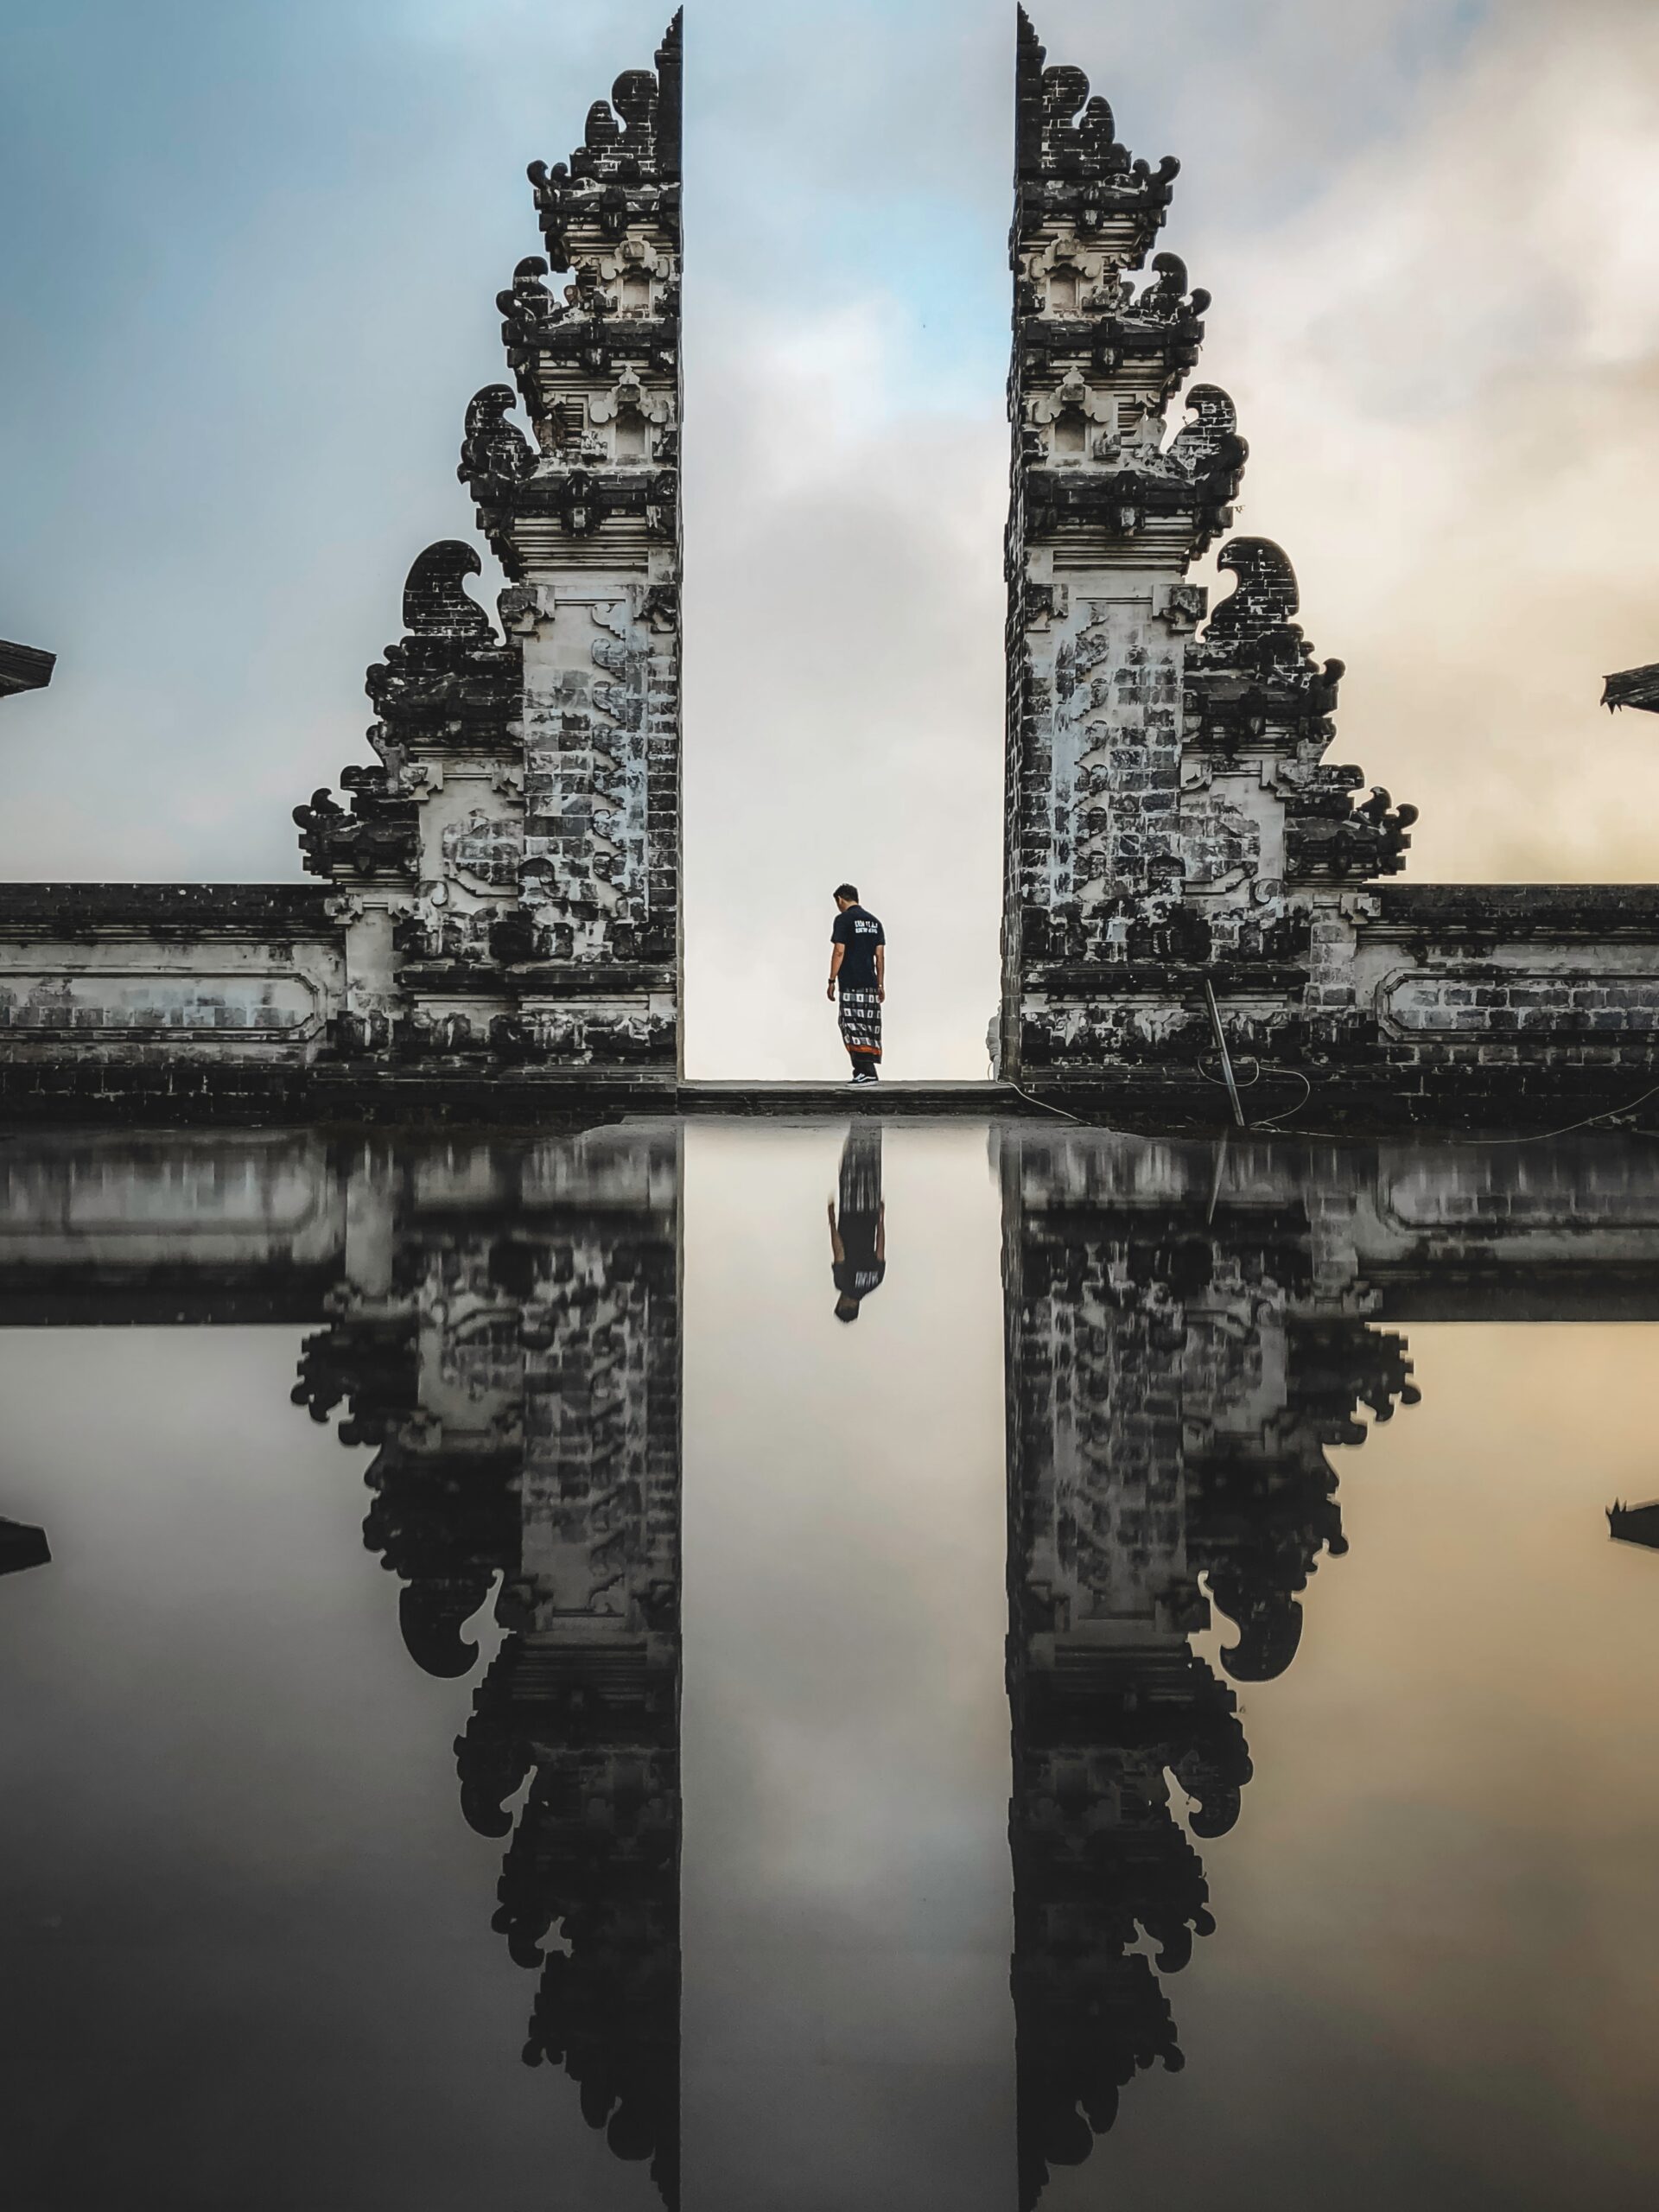 Solo traveler in Lempuyang Temple, Bali.